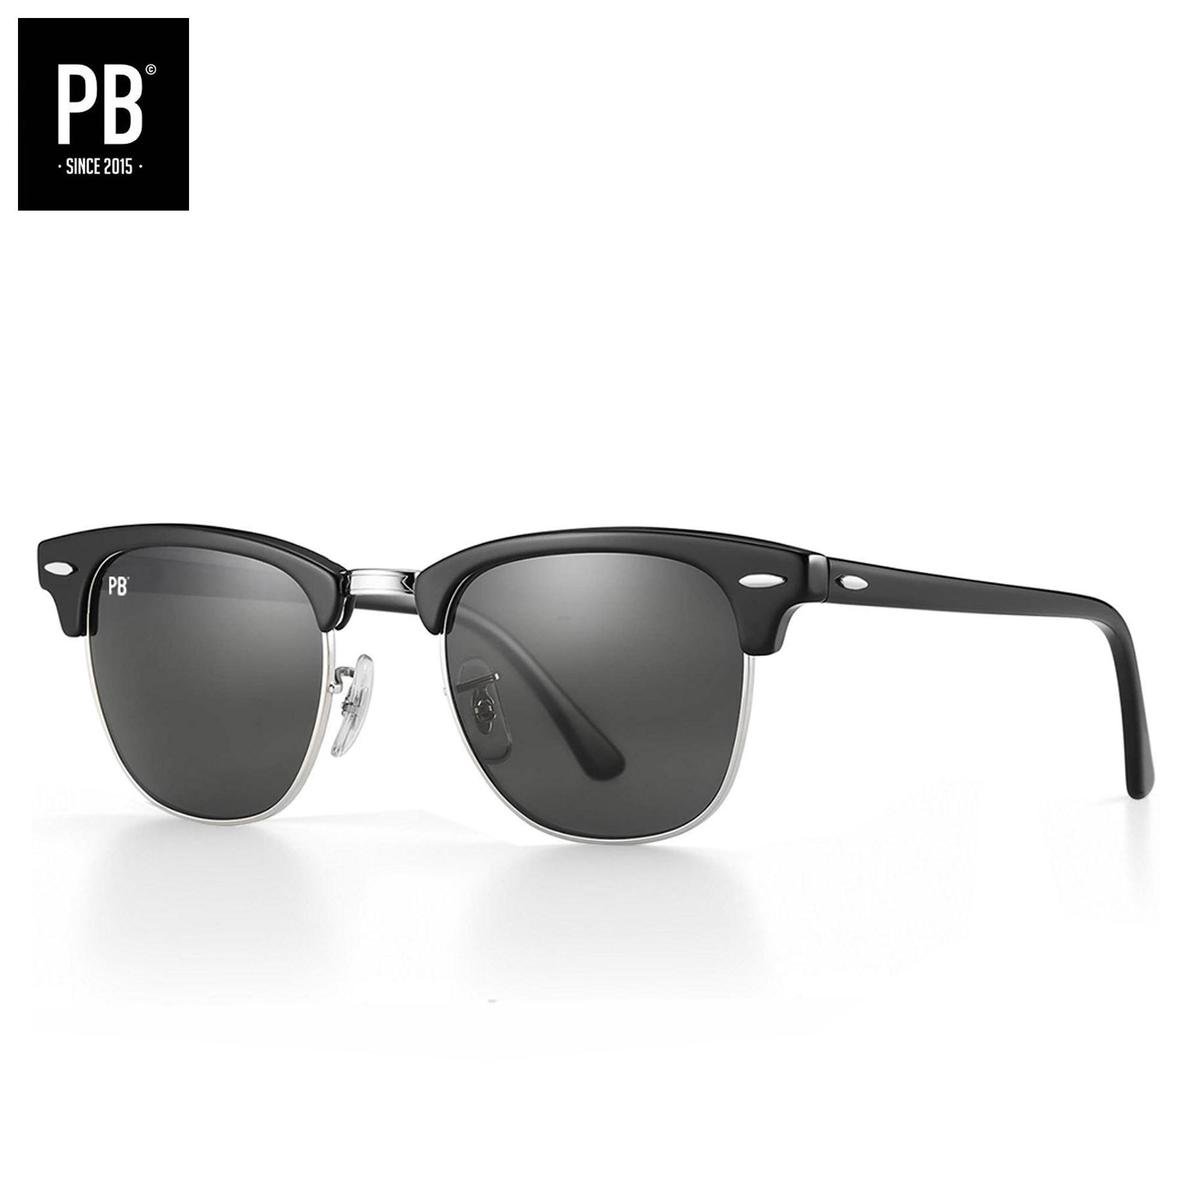 PB Sunglasses - Club Polarised. Zonnebril heren en dames - Gepolariseerd - Zwart design - Ronde vorming